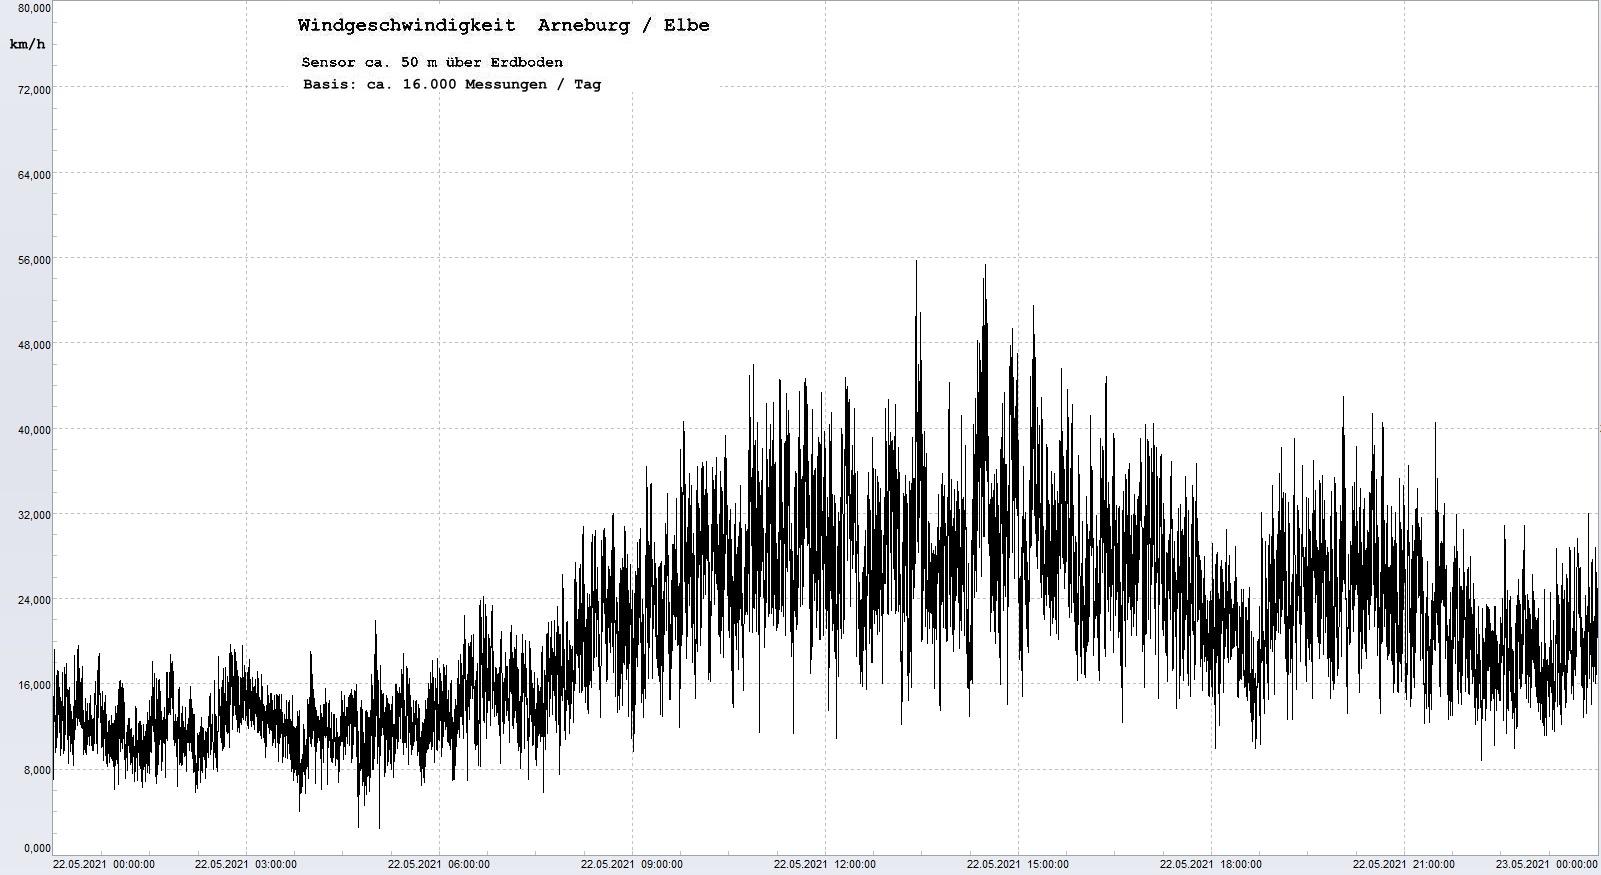 Arneburg Tages-Diagramm Winddaten, 22.05.2021
  Diagramm, Sensor auf Gebude, ca. 50 m ber Erdboden, Basis: 5s-Aufzeichnung